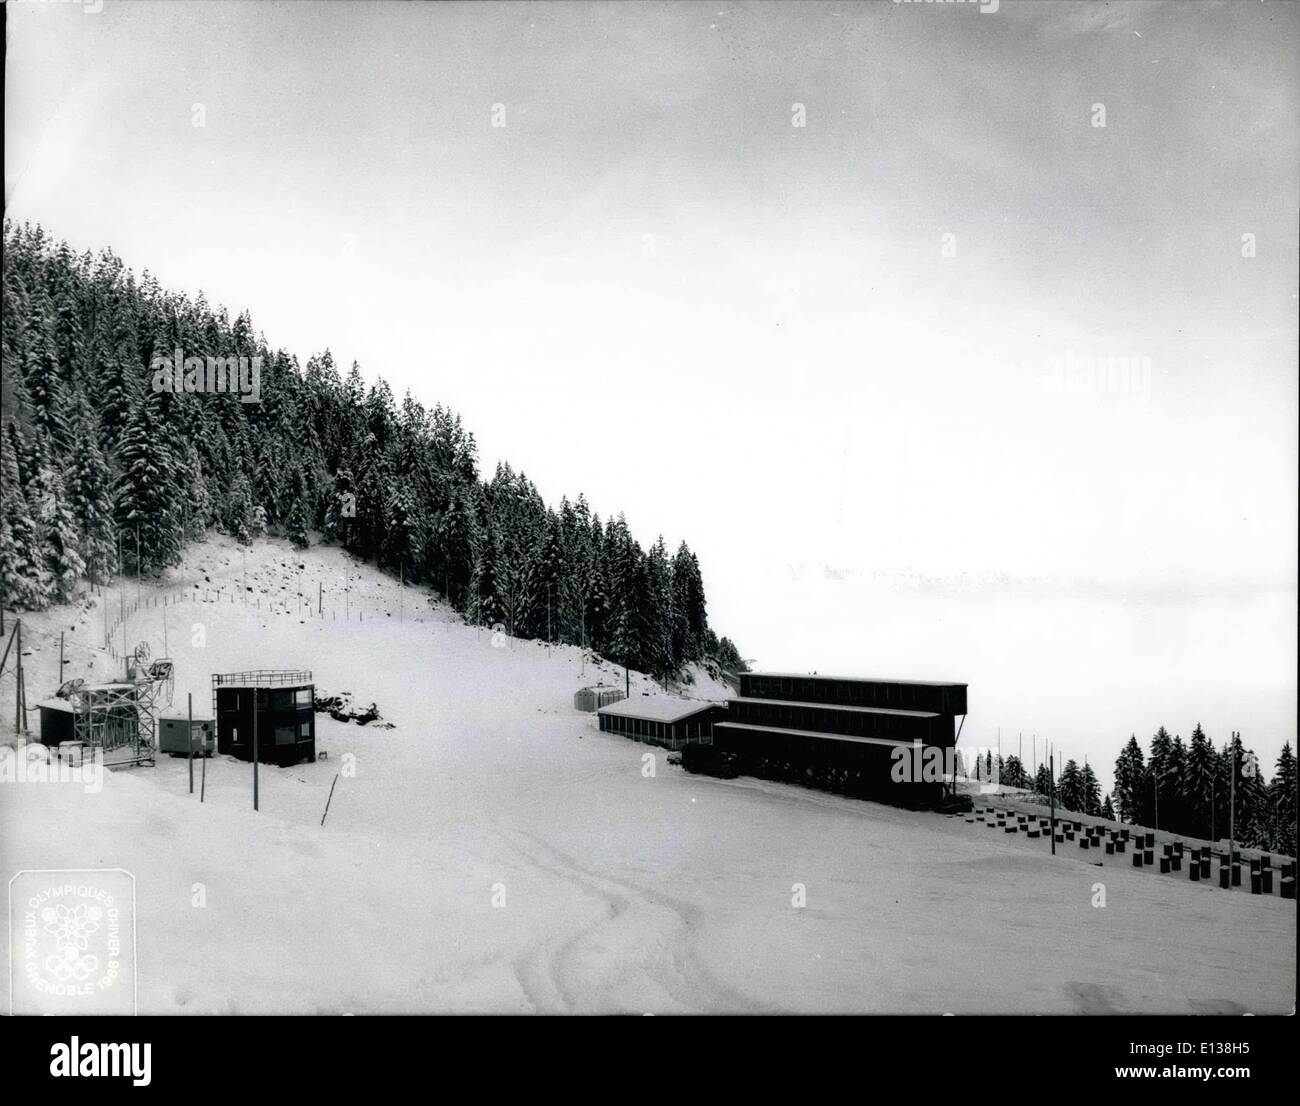 29 février 2012 - chaîne de finition : événements de ski alpin (descente et slalom hommes & femmes) à Chamrousse. Banque D'Images